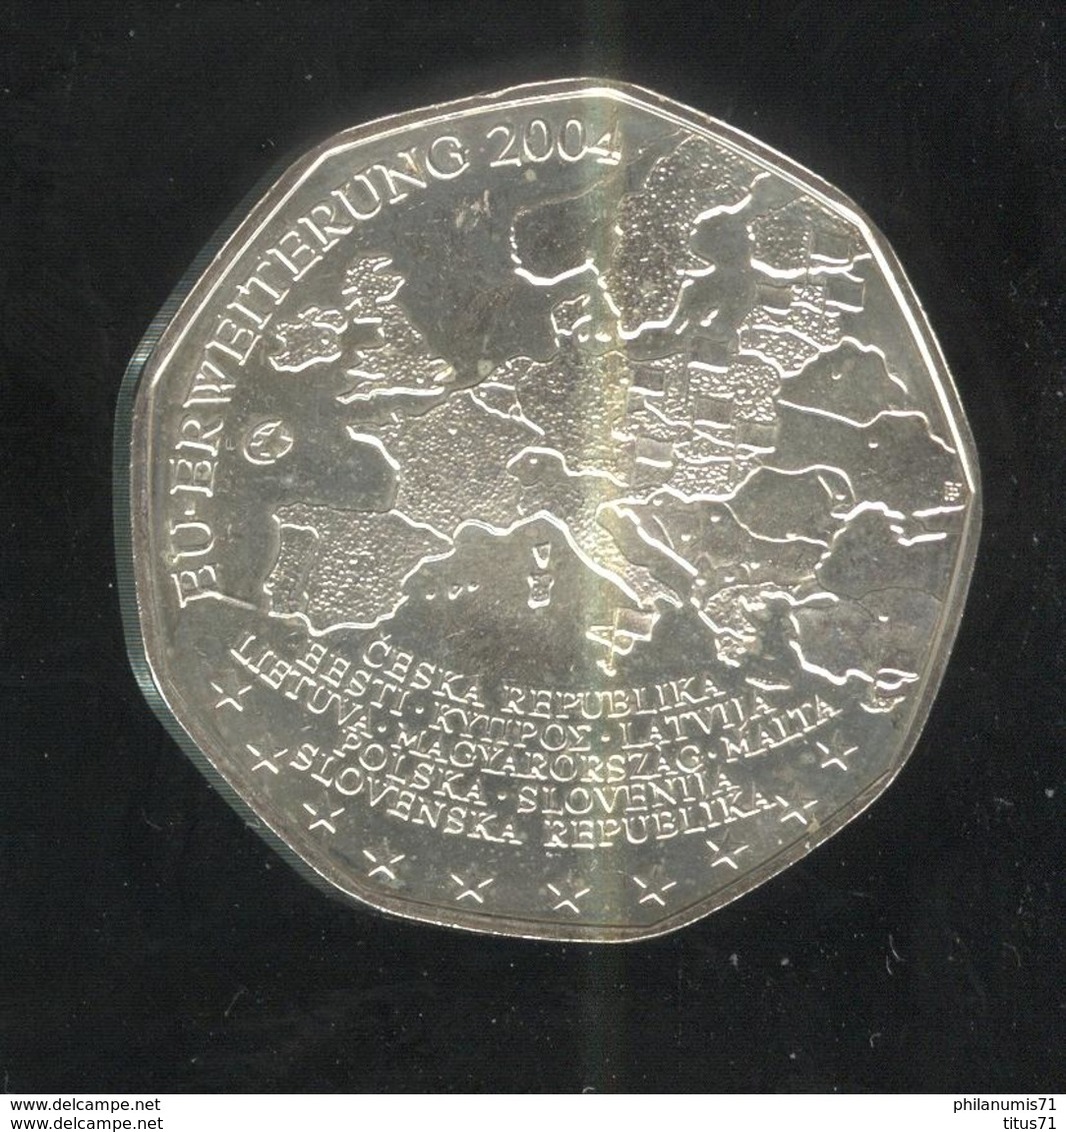 5 Euros Autriche Argent 2004 - Élargissement De L'Union Européenne De 2004 - SUP - Autriche